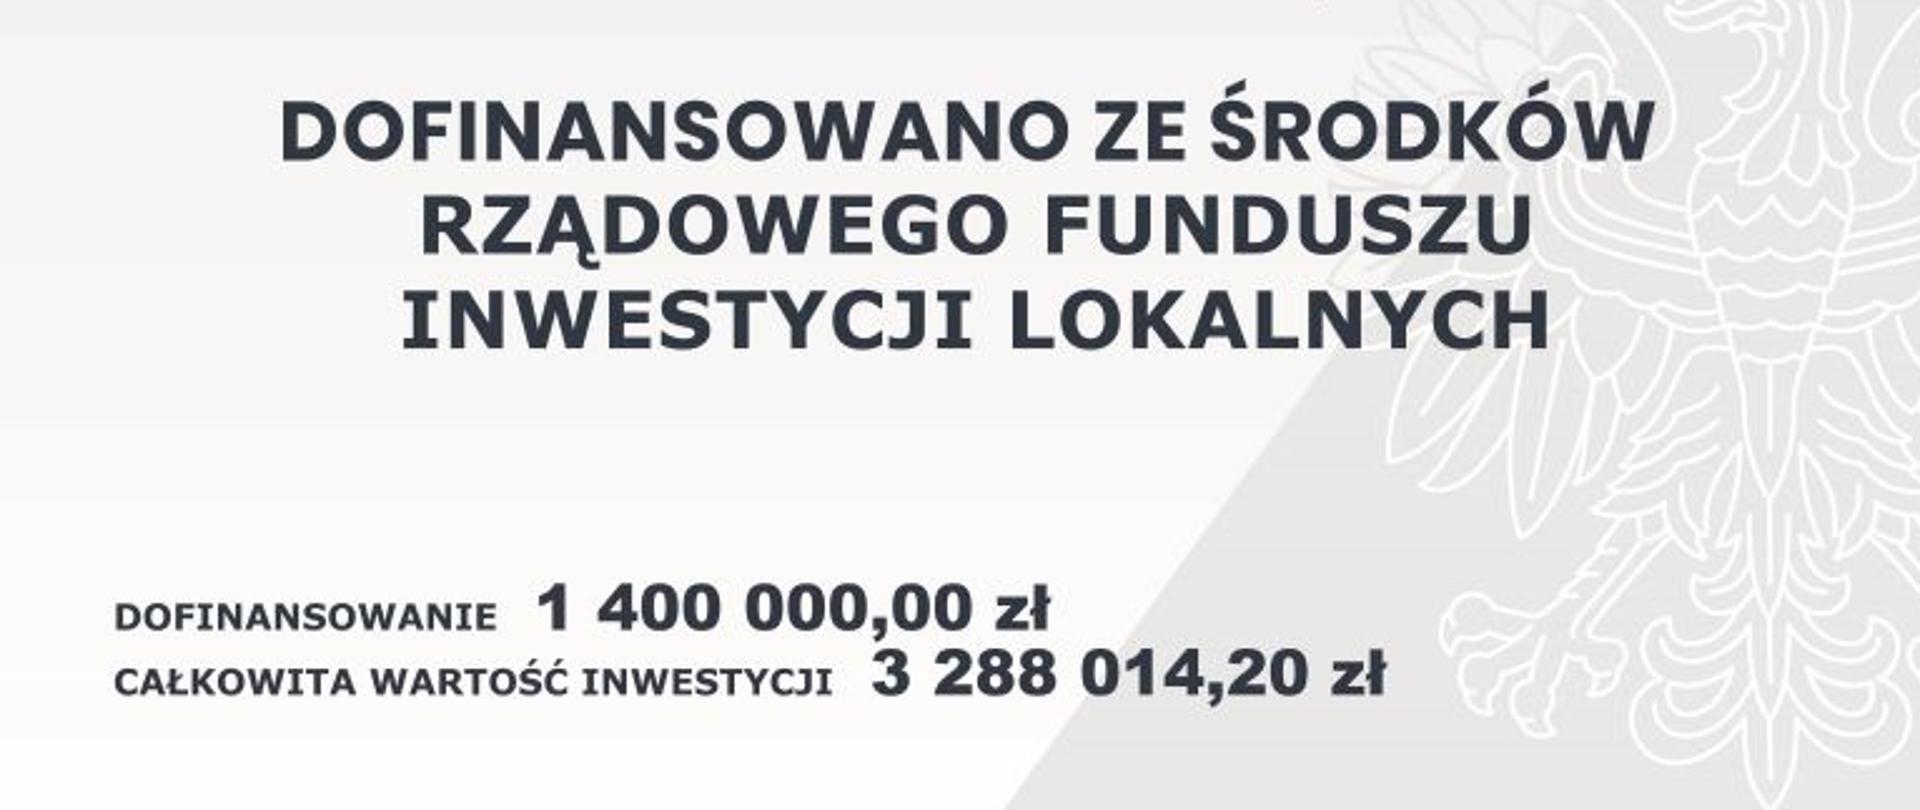 Budowa sieci kanalizacji sanitarnej z przyłączami w miejscowościach Krzymosze i Leśniczówka oraz oczyszczalni ścieków w miejscowości Leśniczówka